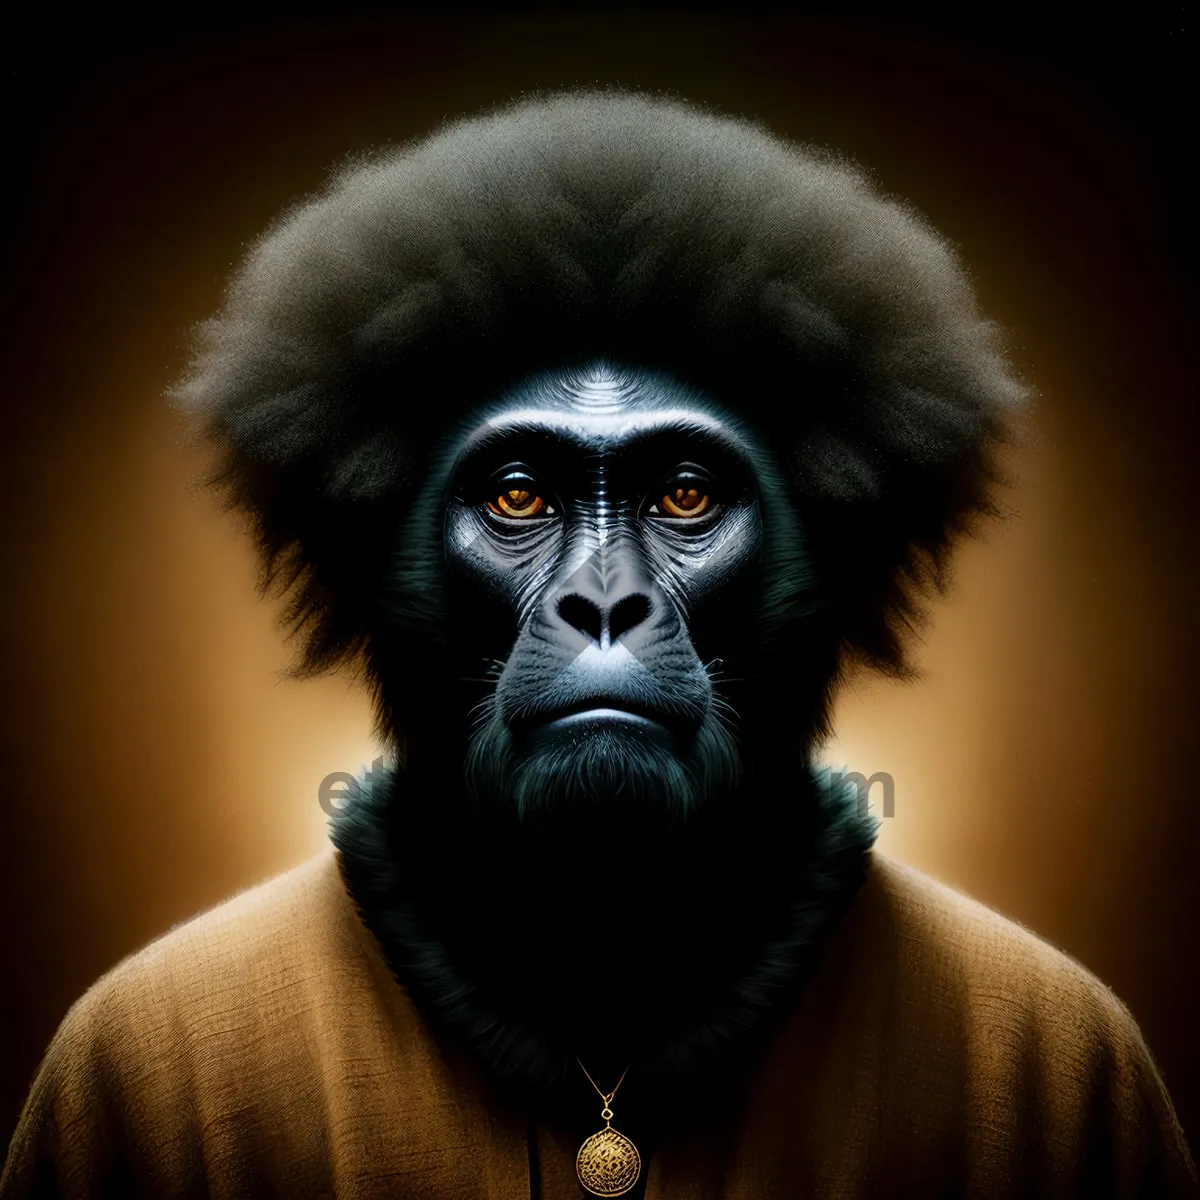 Picture of Primate Gorilla: Black Ape Portrait